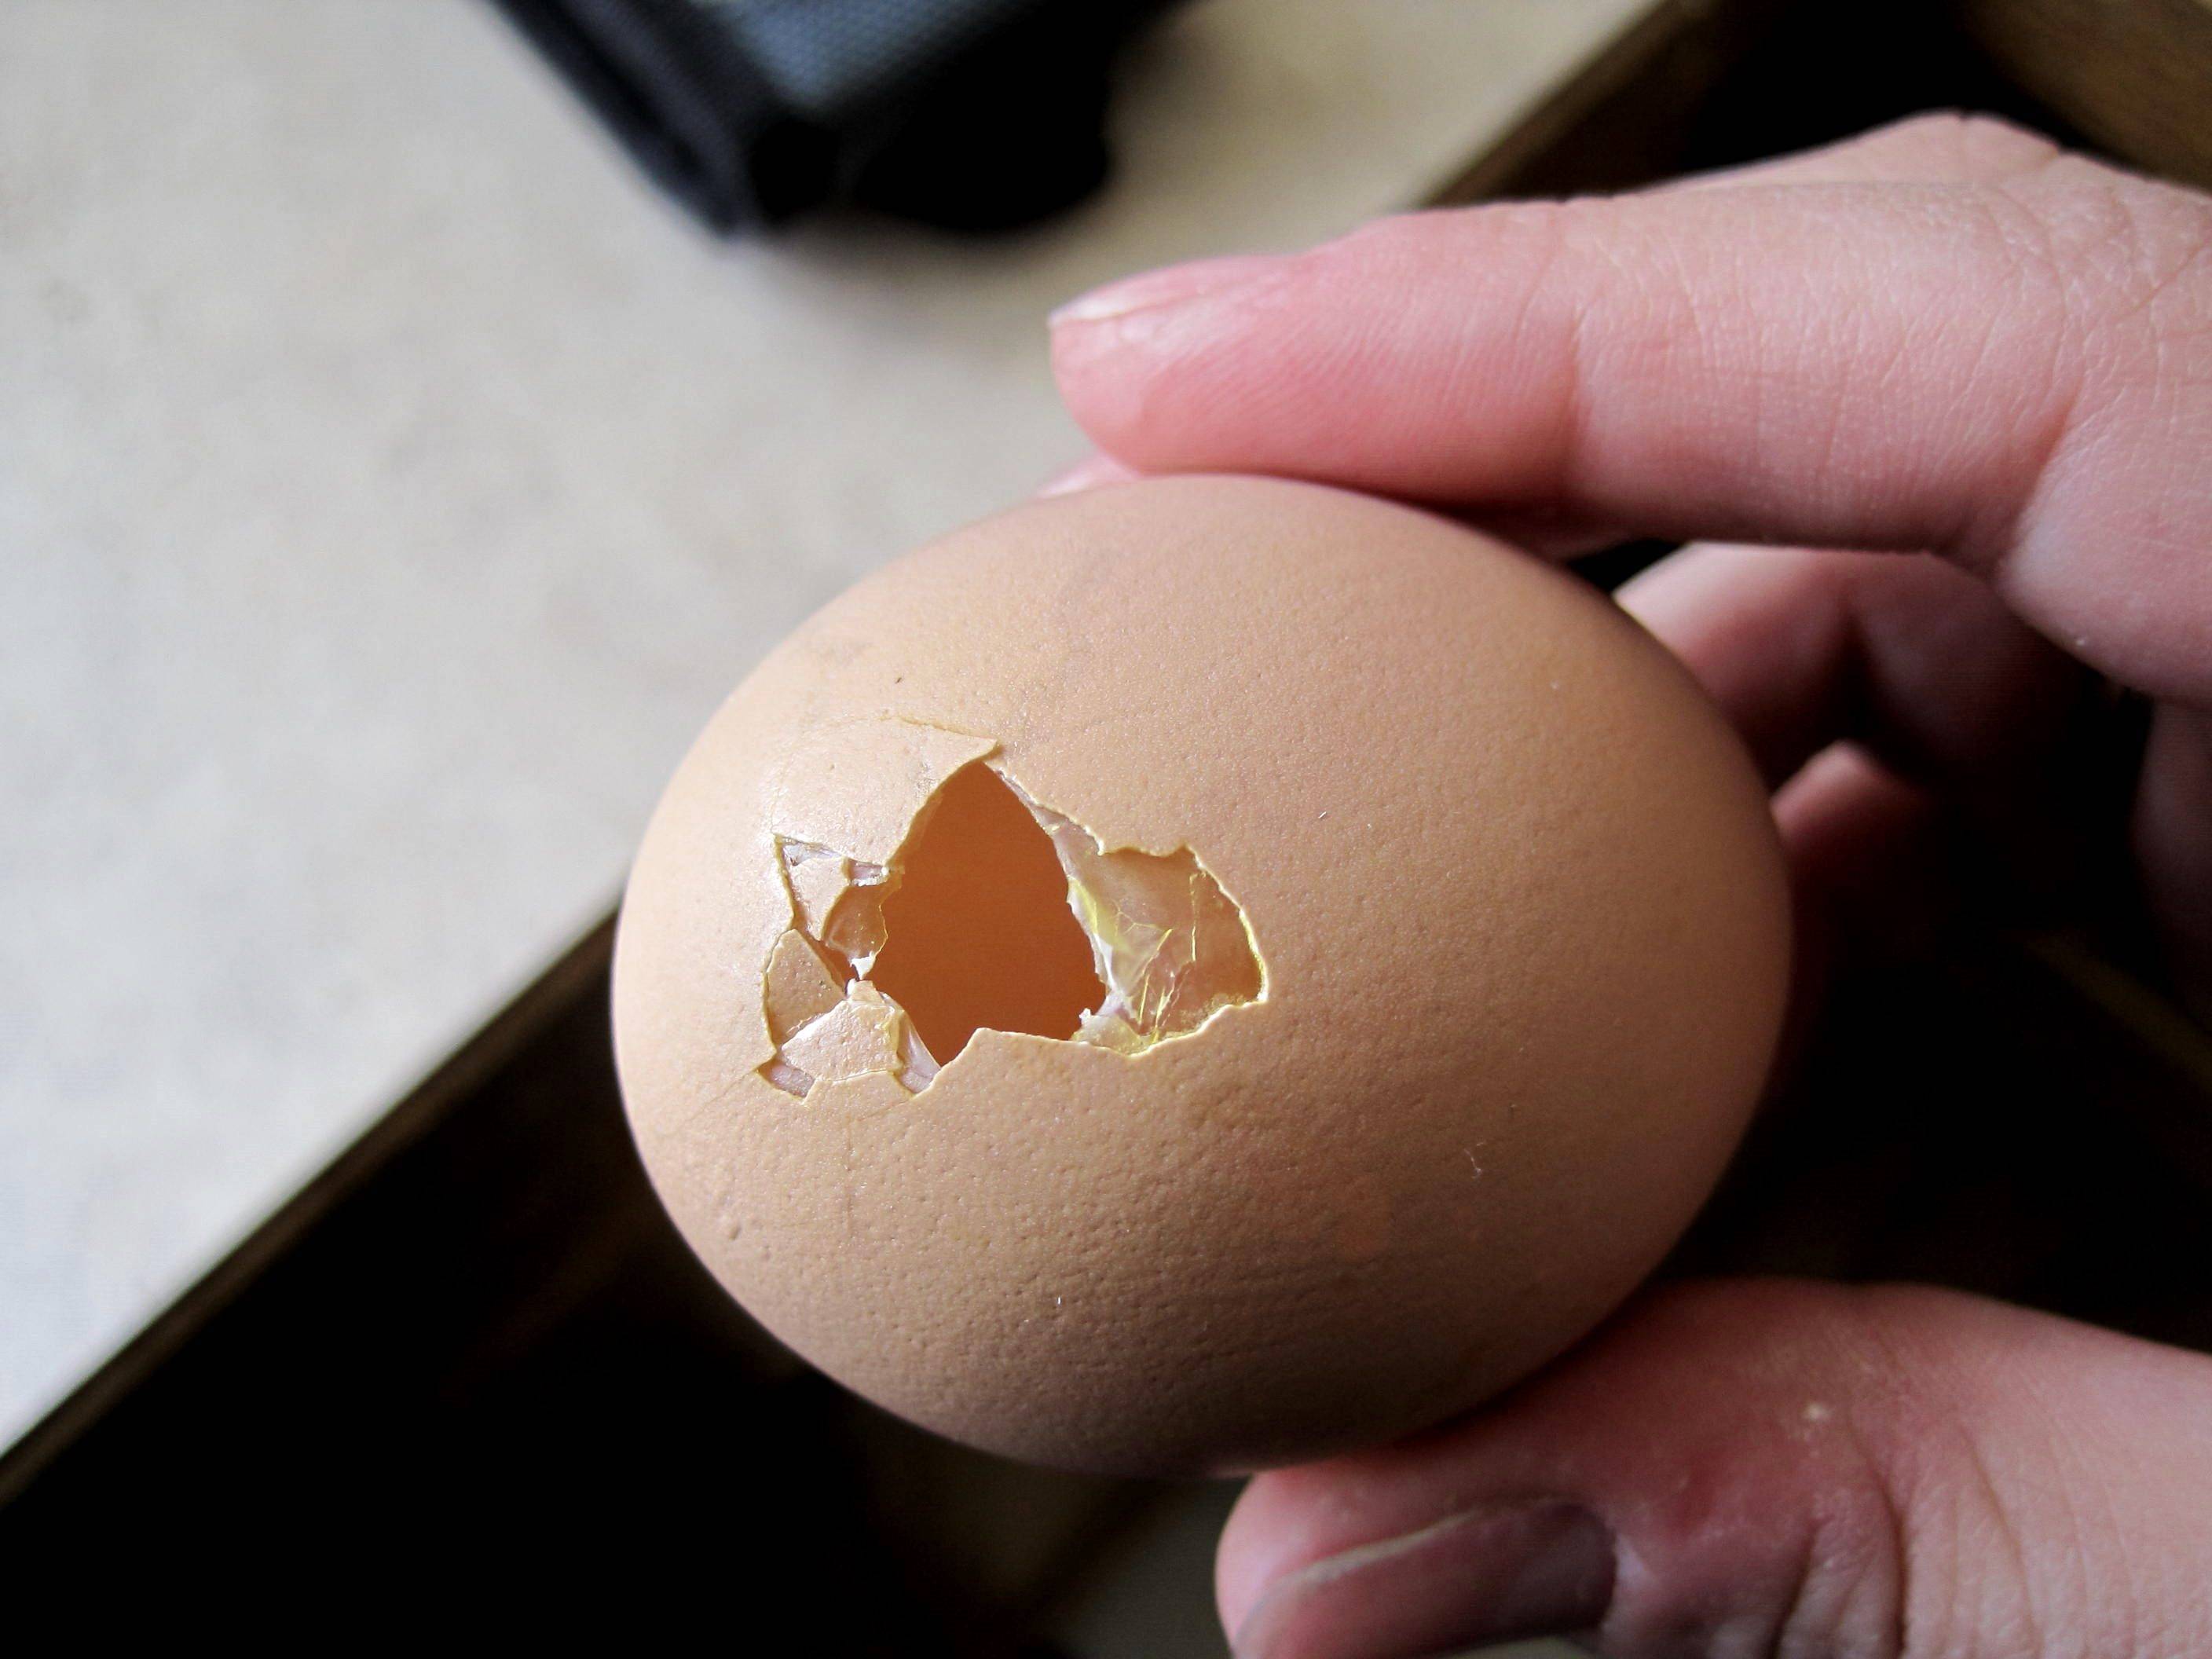 Куры клюют яйца: причина и что делать, как решить проблему препаратами и народными средствами